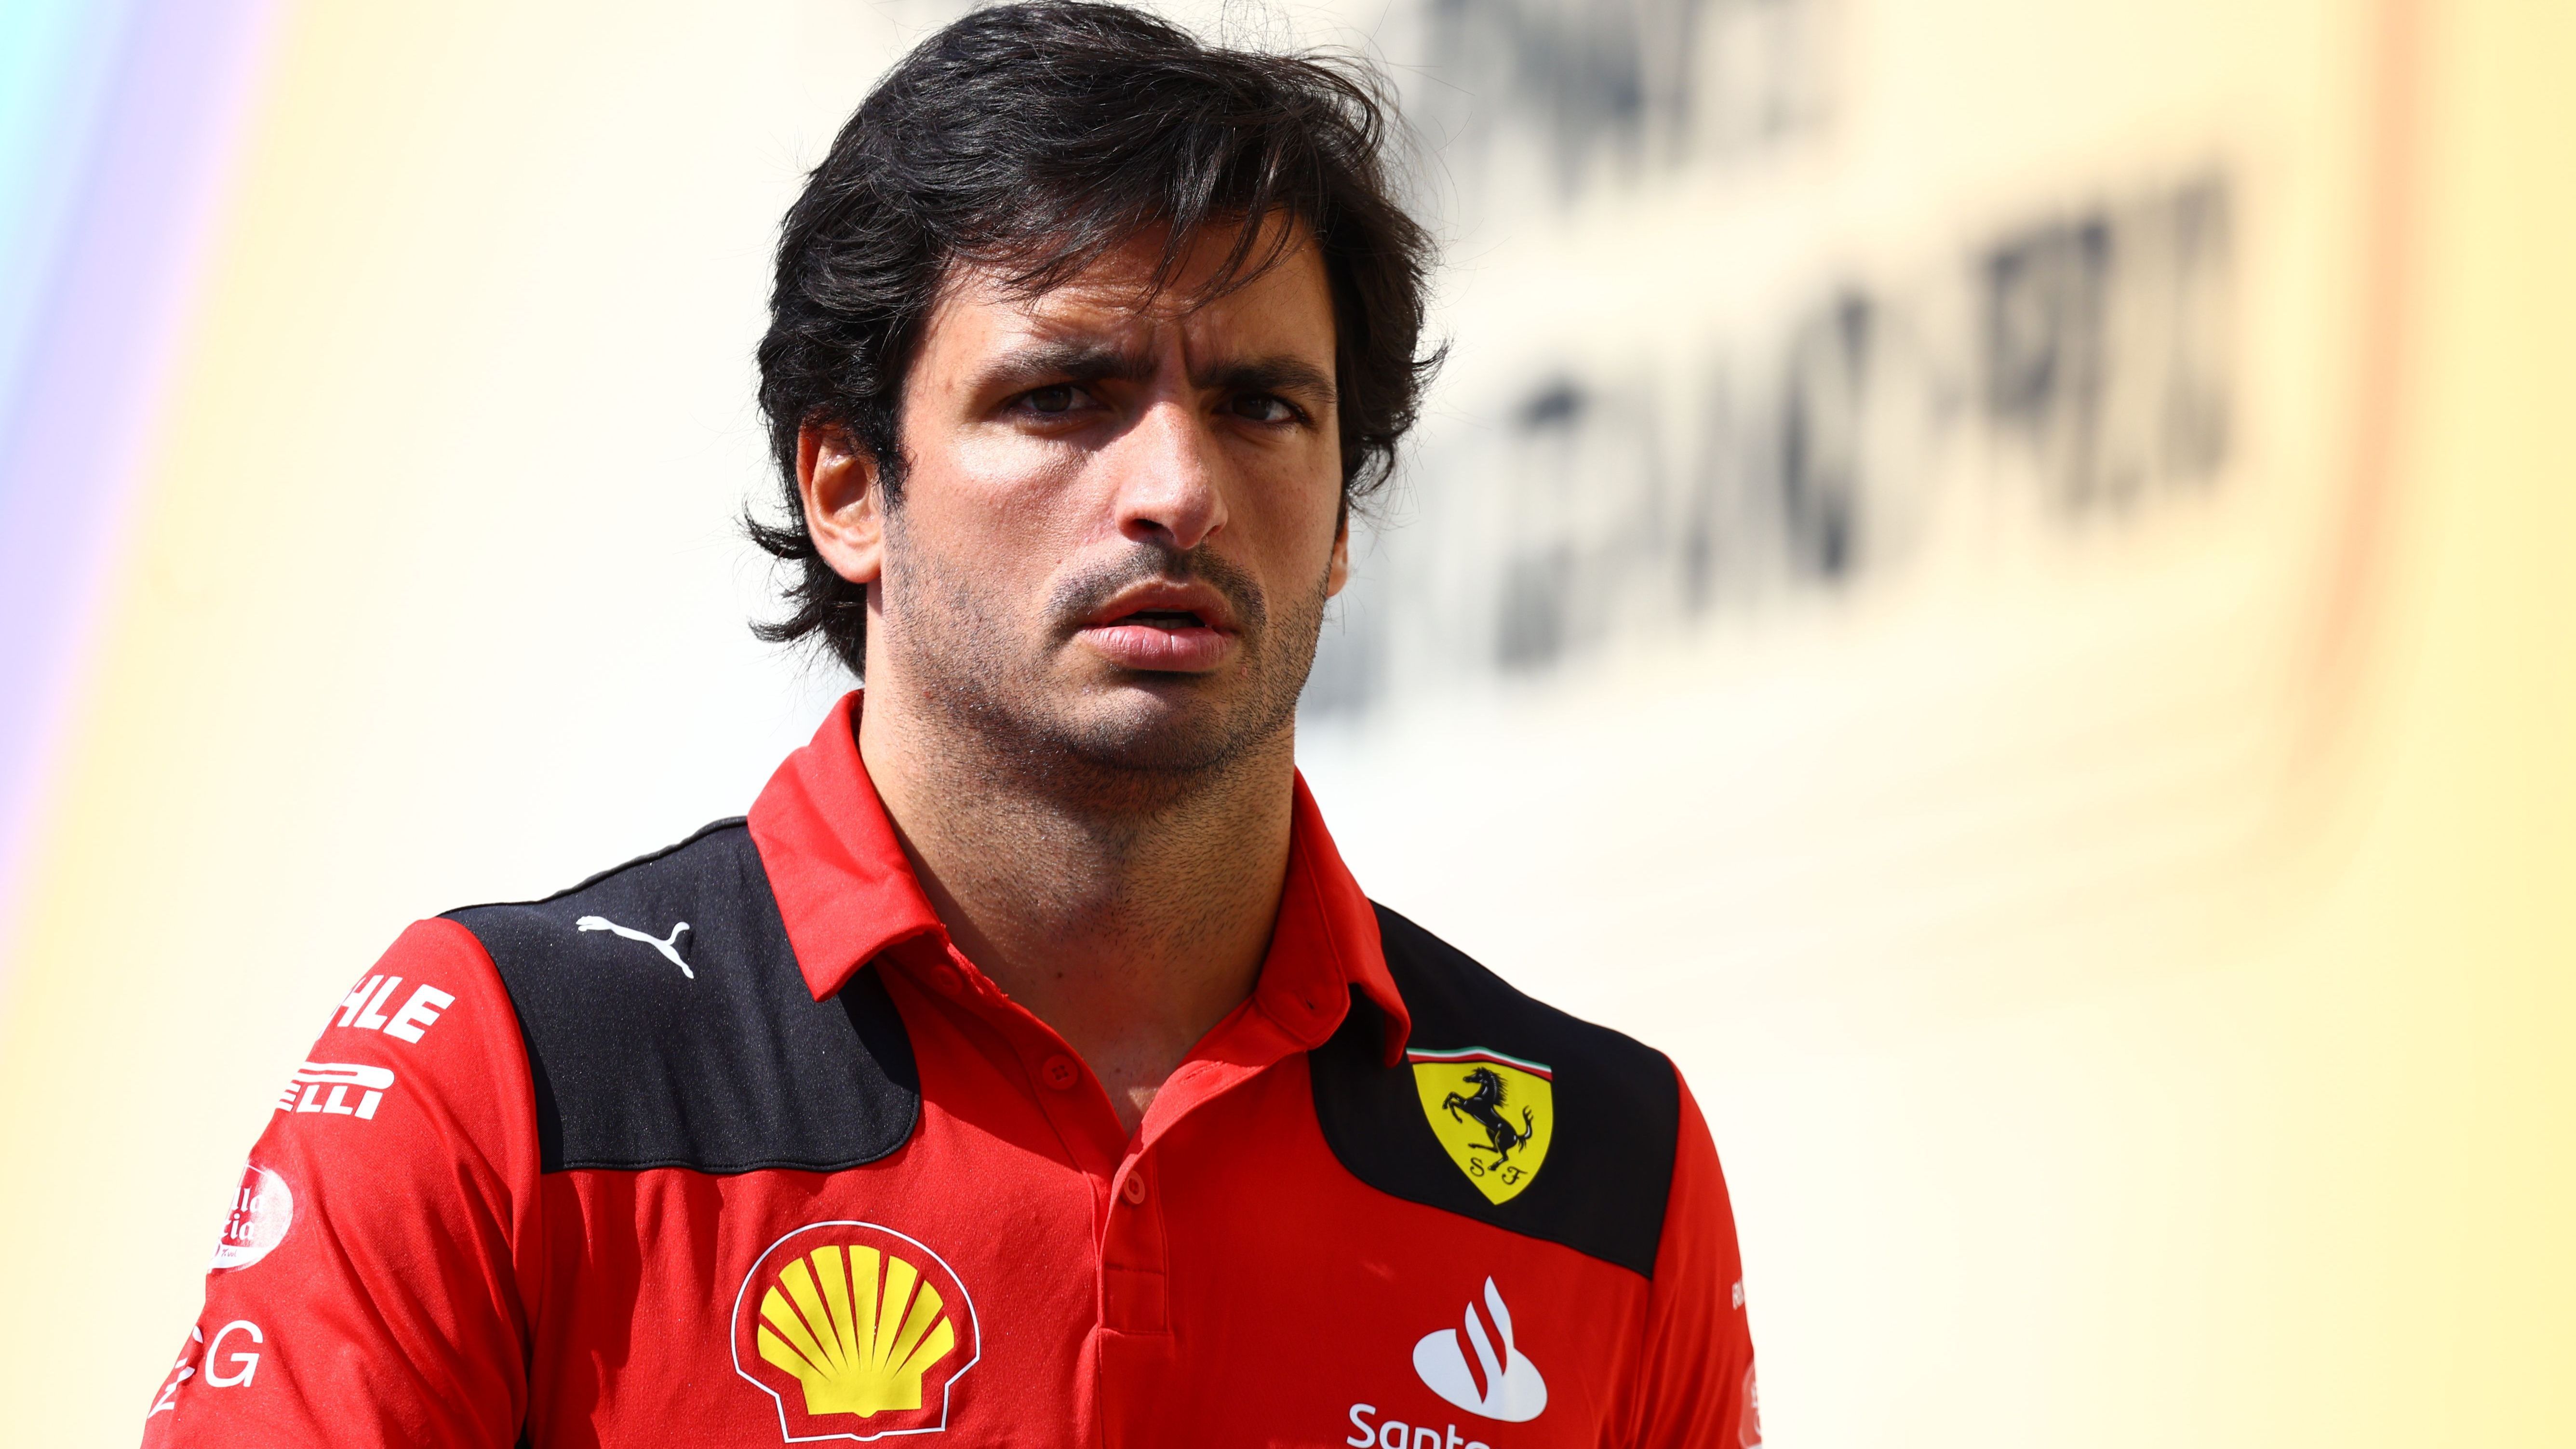 <strong>Carlos Sainz (derzeit Ferrari)</strong><br>Mit der Ankunft von Hamilton bei Ferrari ist der Spanier Sainz sein Cockpit bei der Scuderia los. Dass er in der Formel 1 aber mit den Besten mithalten kann, hat er über Jahre bewiesen. Kommt es also schlicht zum Tausch zwischen Hamilton und dem 29-Jährigen?